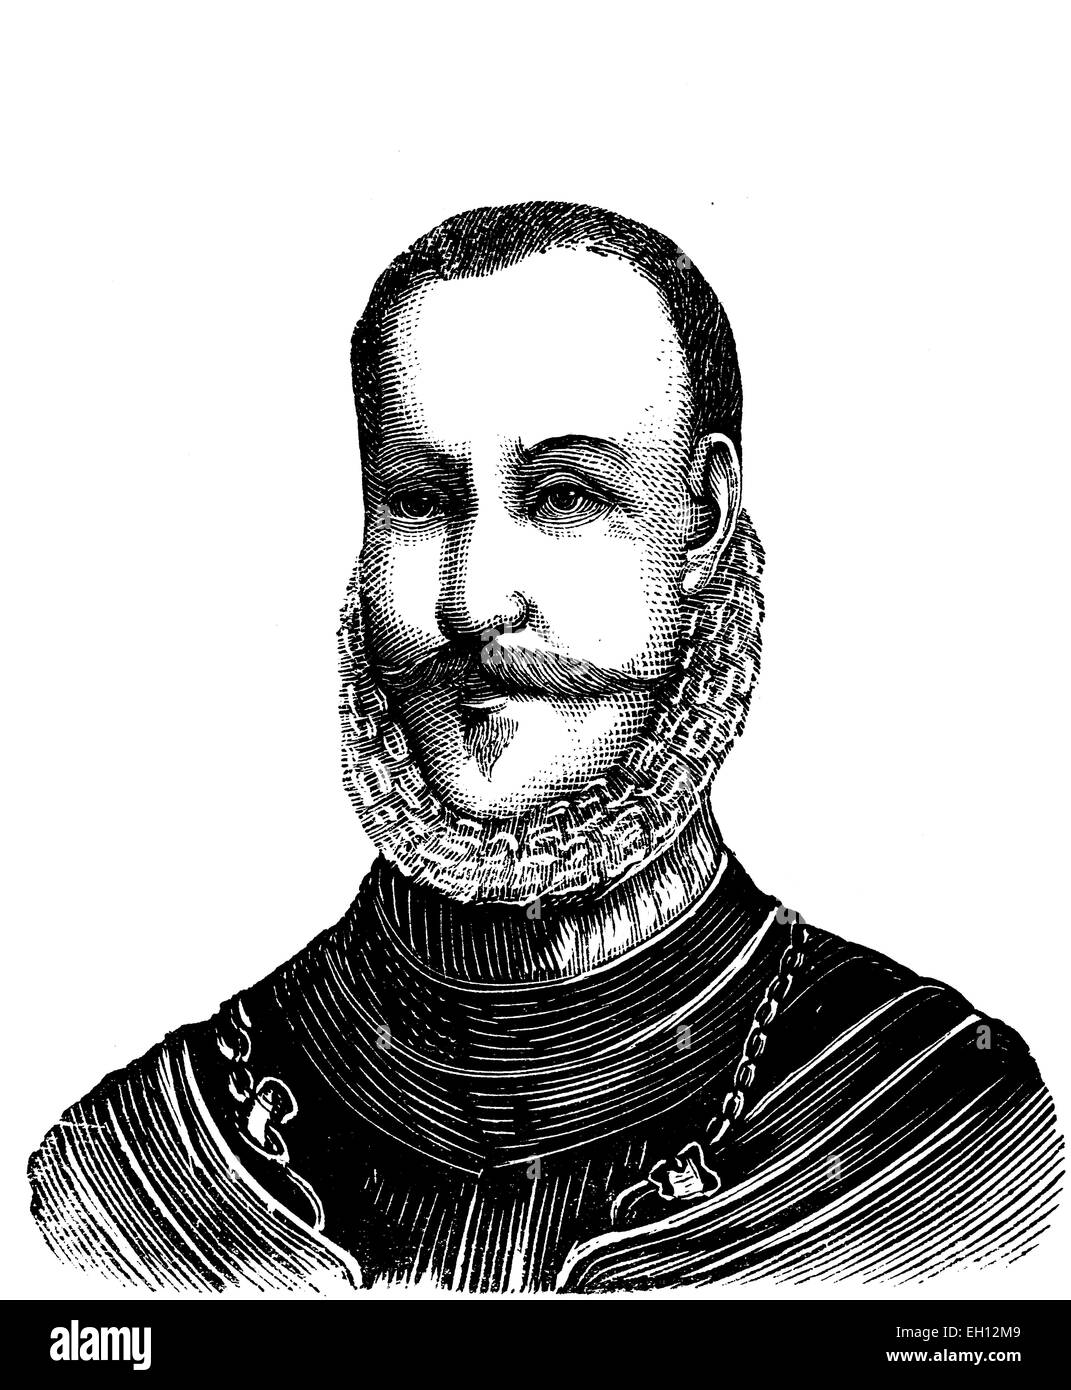 Frédéric II de Danemark, 1534 - 1588, Roi du Danemark et de la Norvège, gravure sur bois de 1880 Banque D'Images